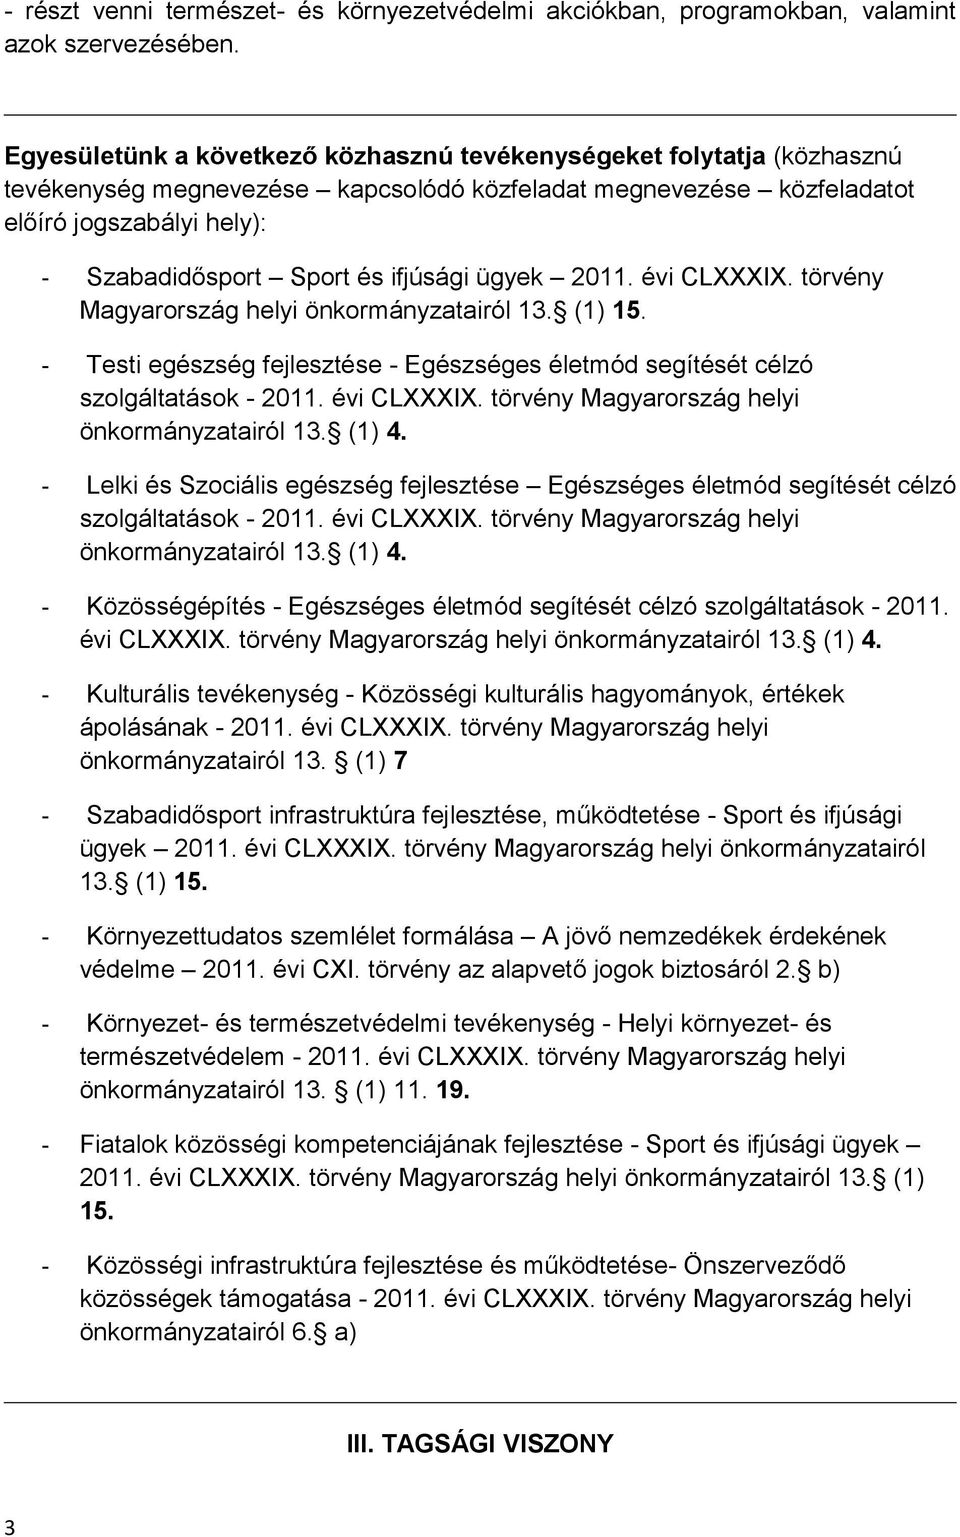 ifjúsági ügyek 2011. évi CLXXXIX. törvény Magyarország helyi önkormányzatairól 13. (1) 15. - Testi egészség fejlesztése - Egészséges életmód segítését célzó szolgáltatások - 2011. évi CLXXXIX. törvény Magyarország helyi önkormányzatairól 13. (1) 4.